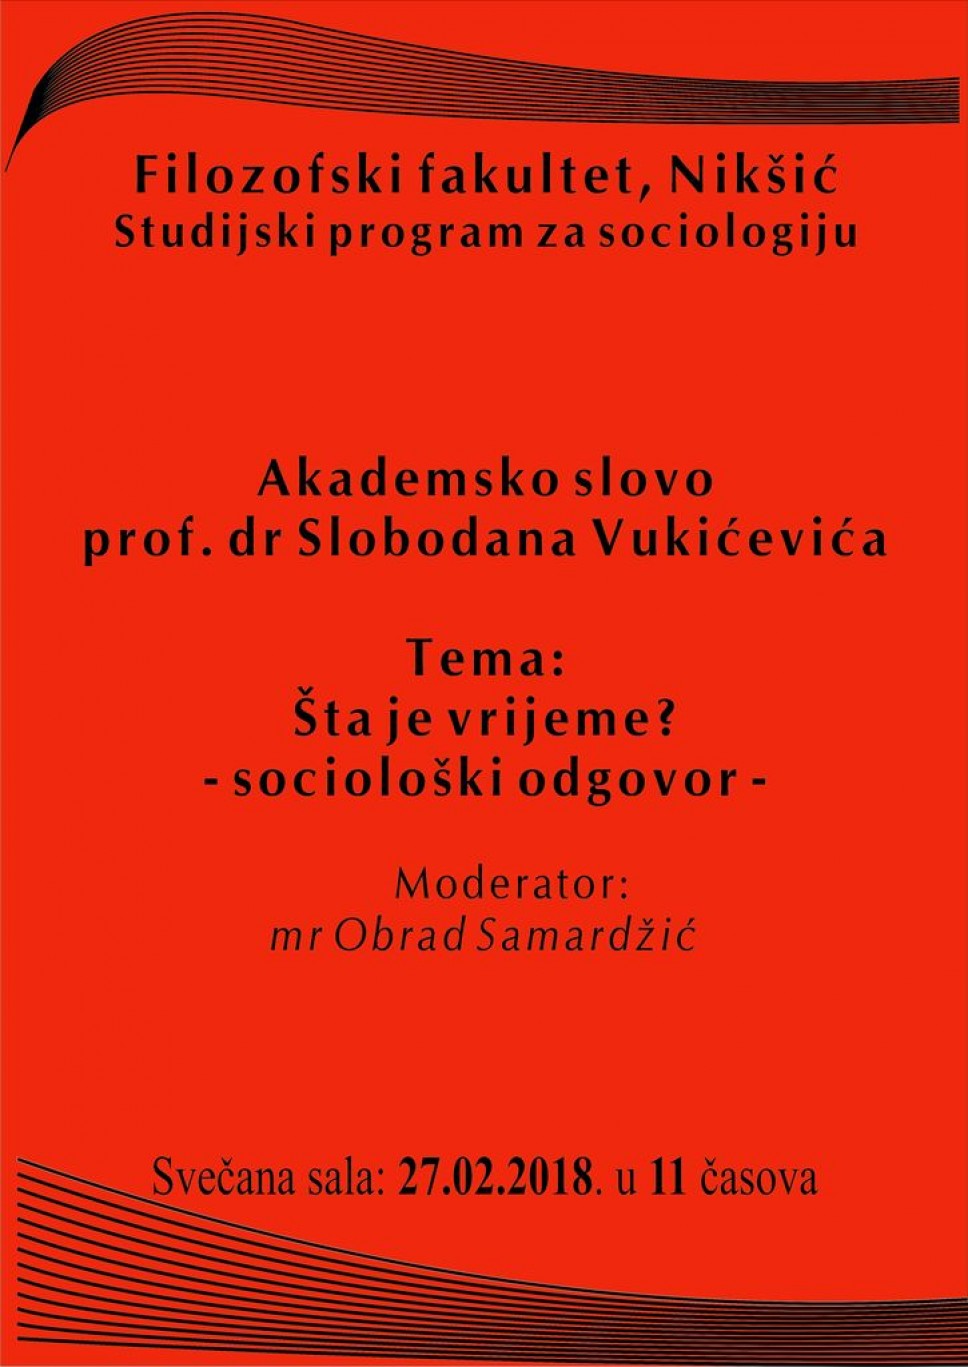 Predavanje prof. dr Slobodana Vukićevića